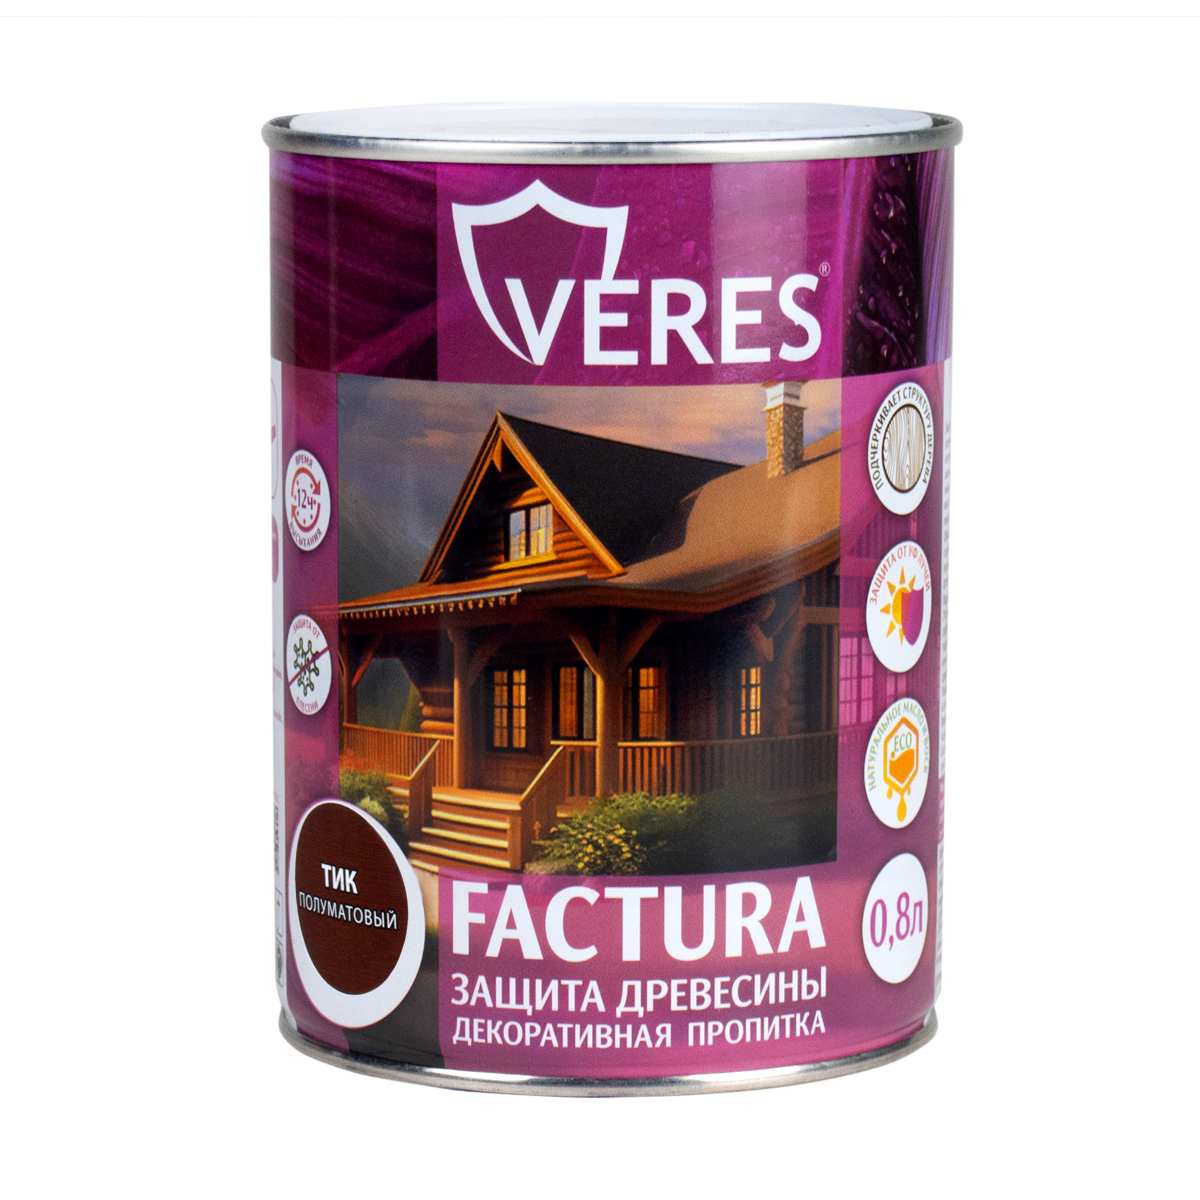 Декоративная пропитка для дерева Veres Factura полуматовая 0 8 л тик, VR-056